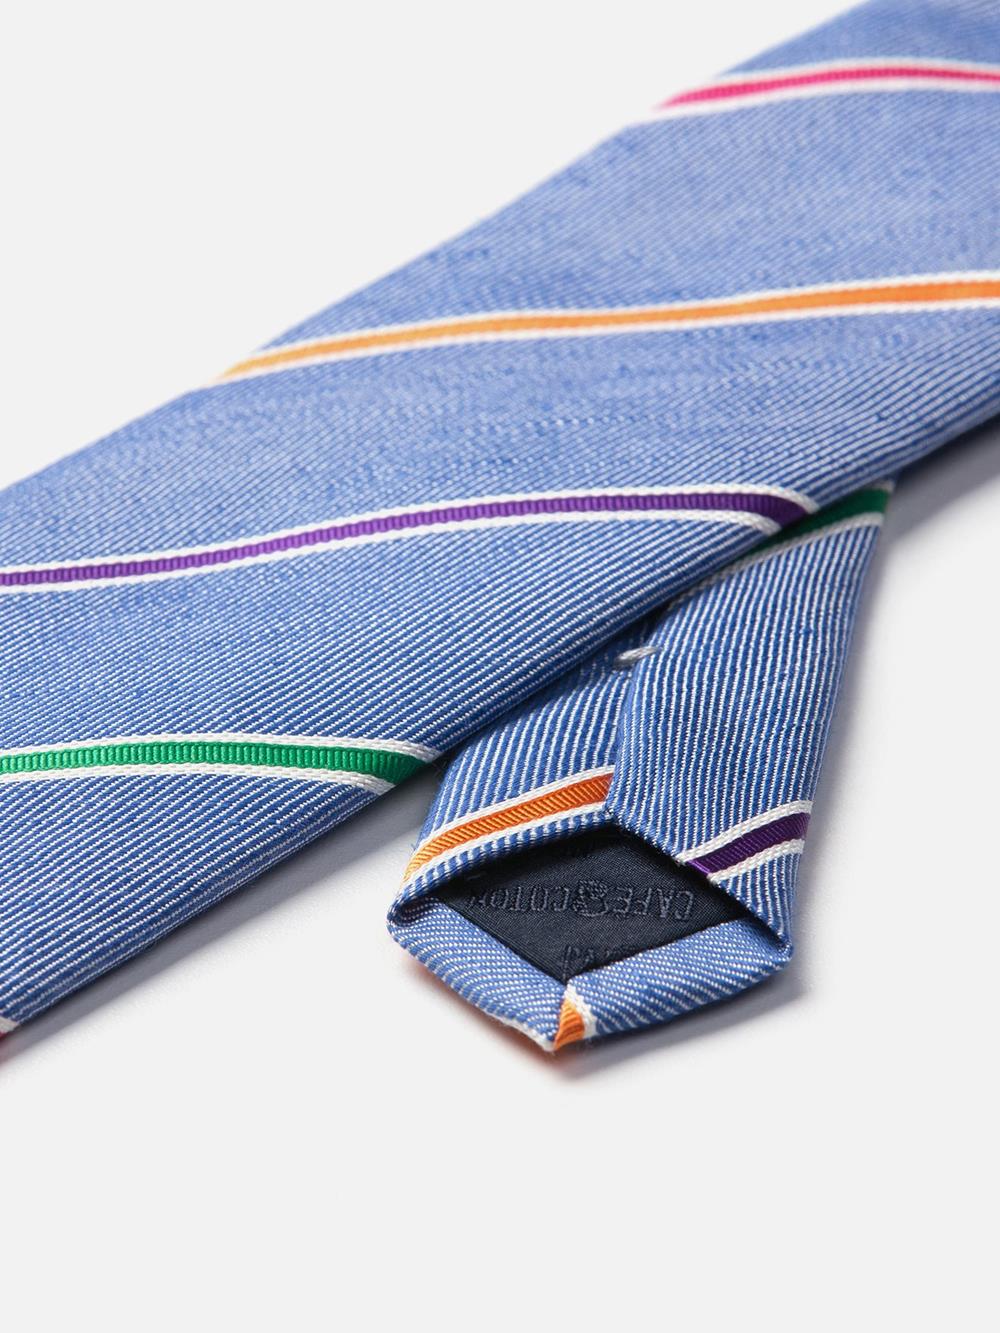 Multicolored Striped Silk Tie and Linen Tie with Multicolored Stripes